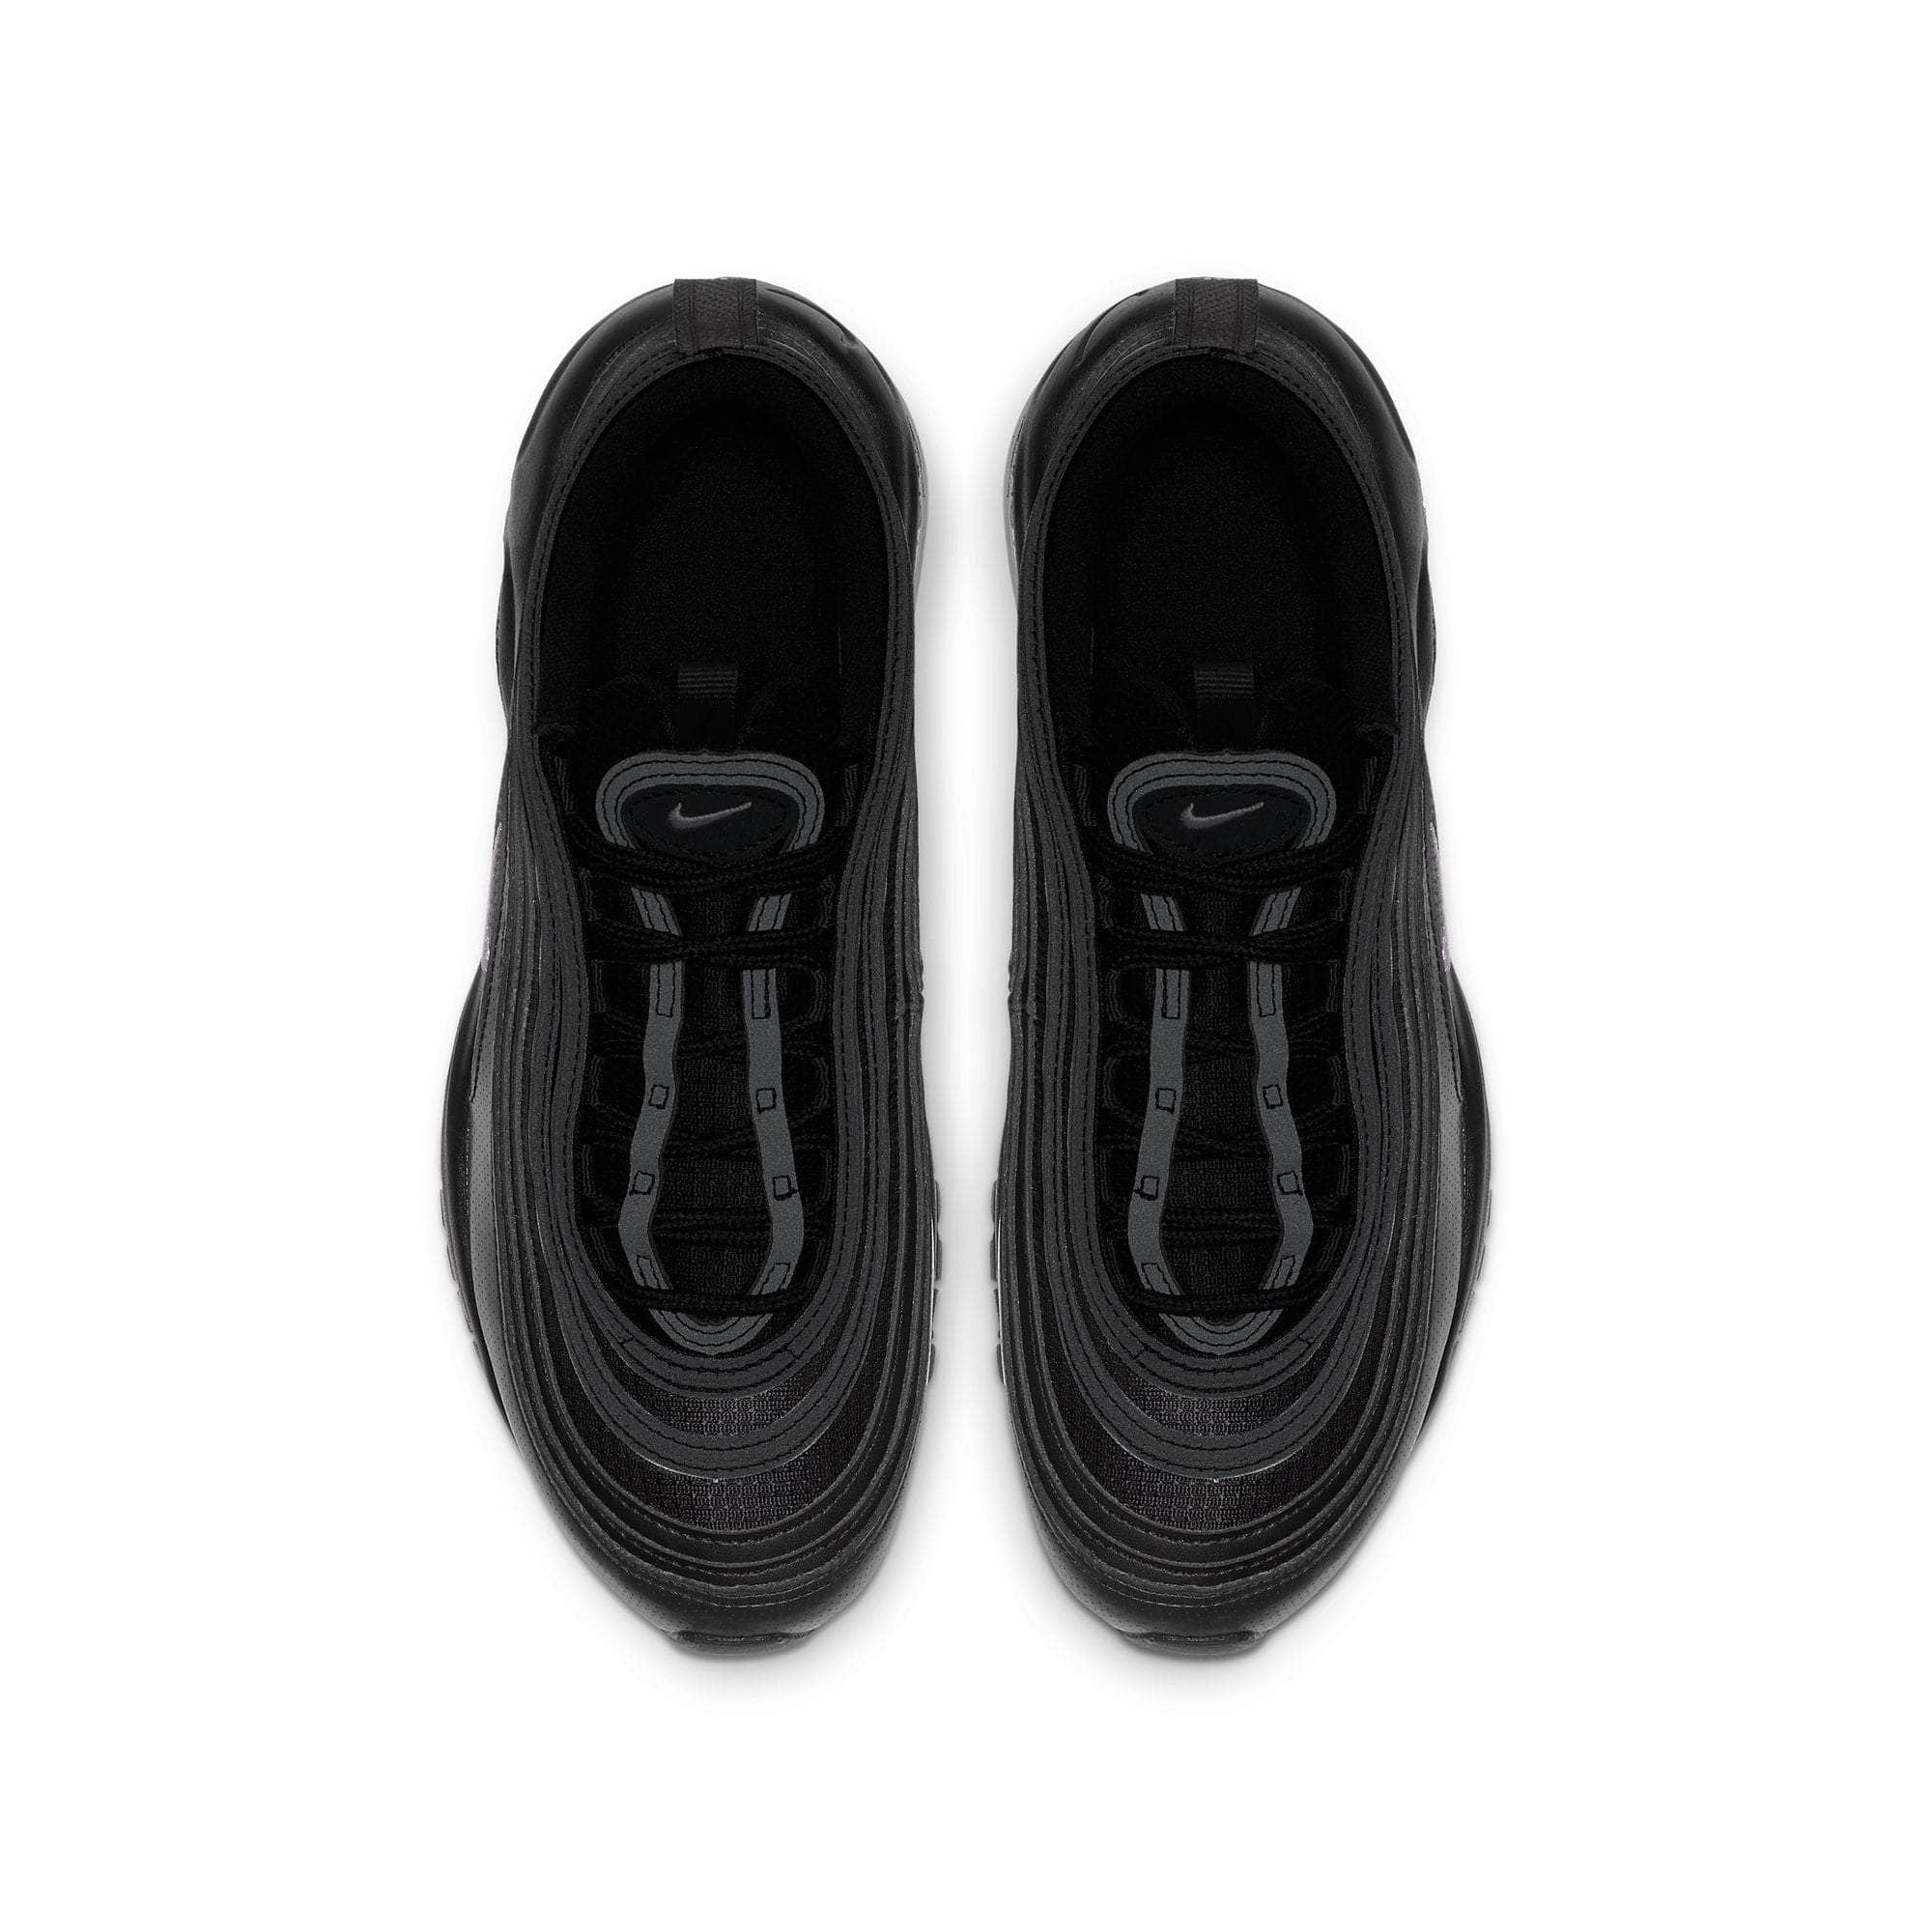 Nike Air Max 97 Black (GS)